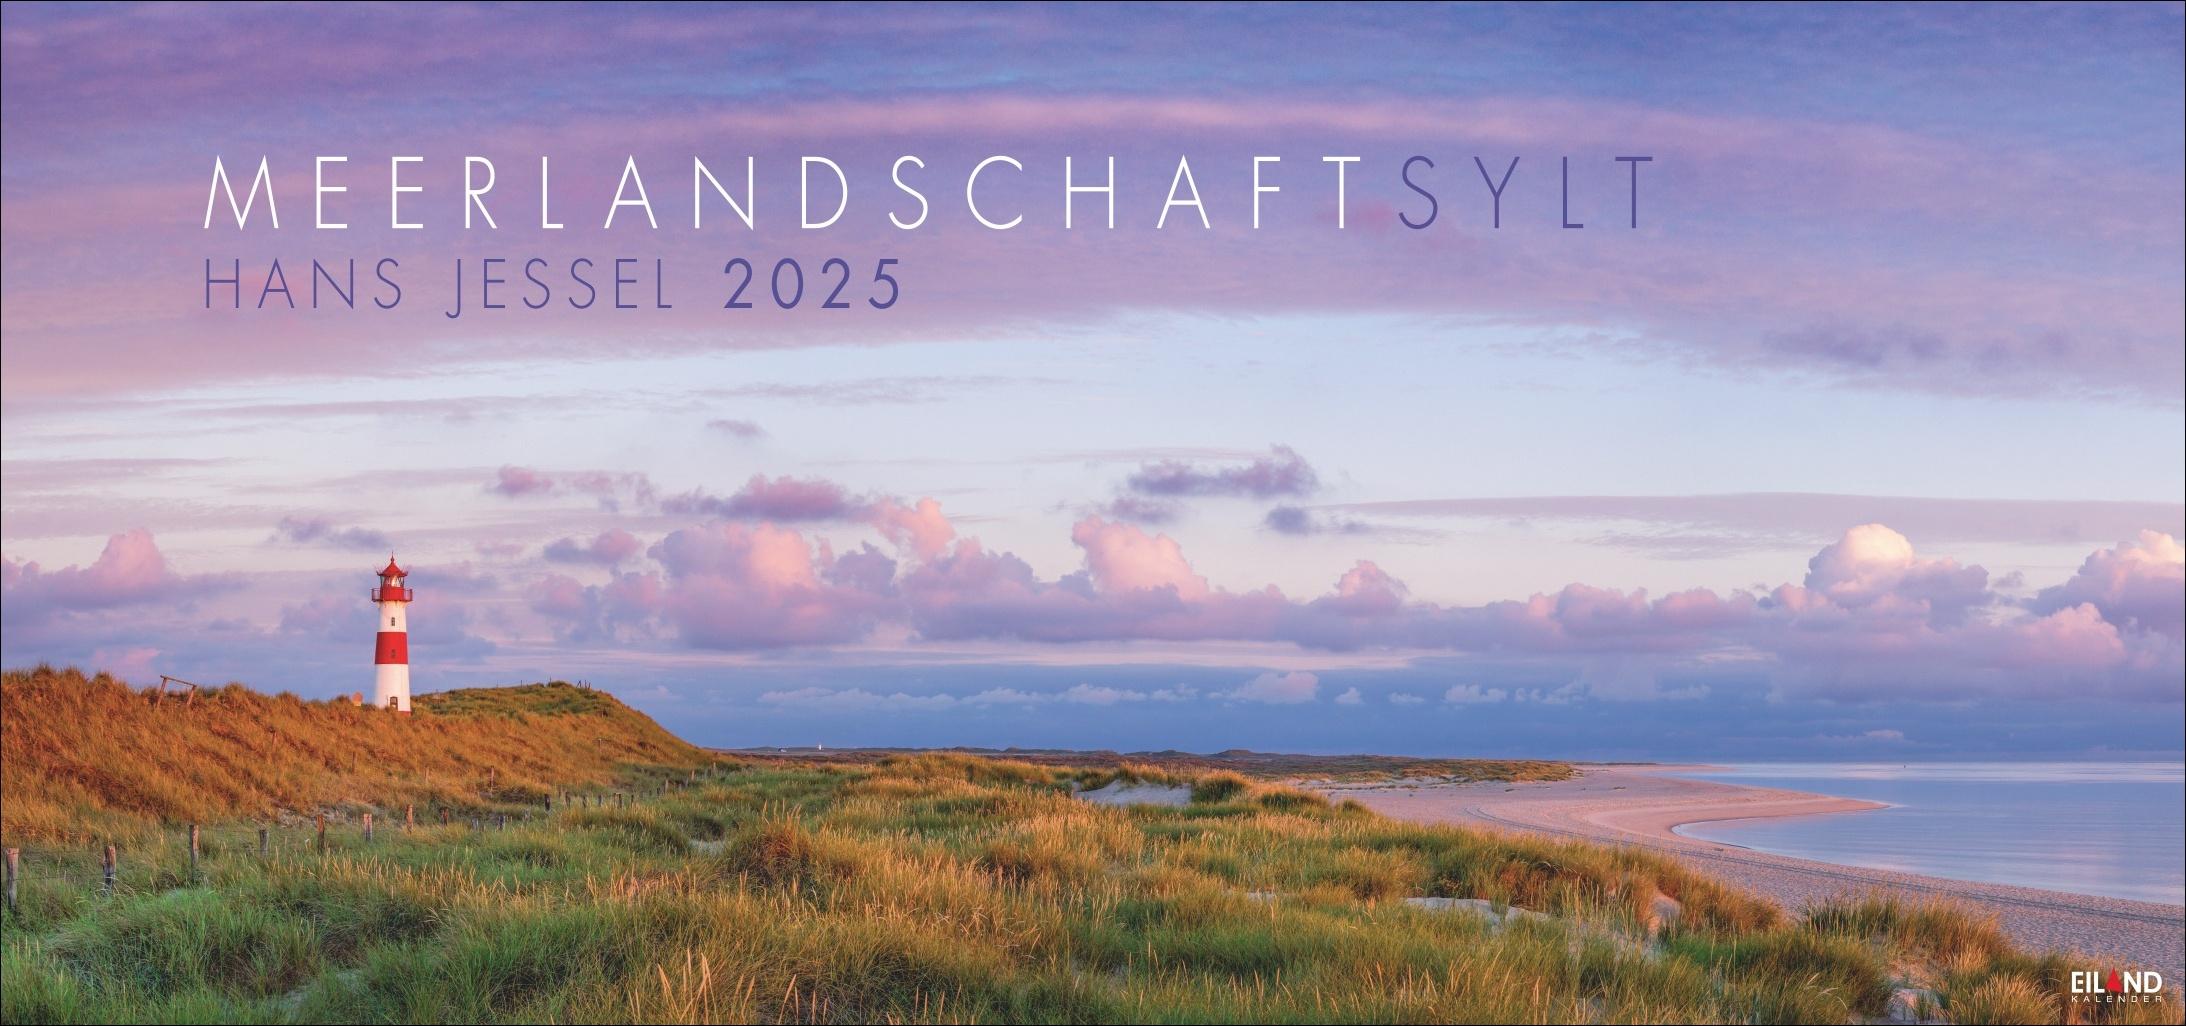 Meerlandschaft SYLT 2025 Großer Panorama-Wandkalender mit Fotos des bekannten Künstlers Hans Jessel. Meereslandschaften eingefangen in einem XXL-Fotokalender.